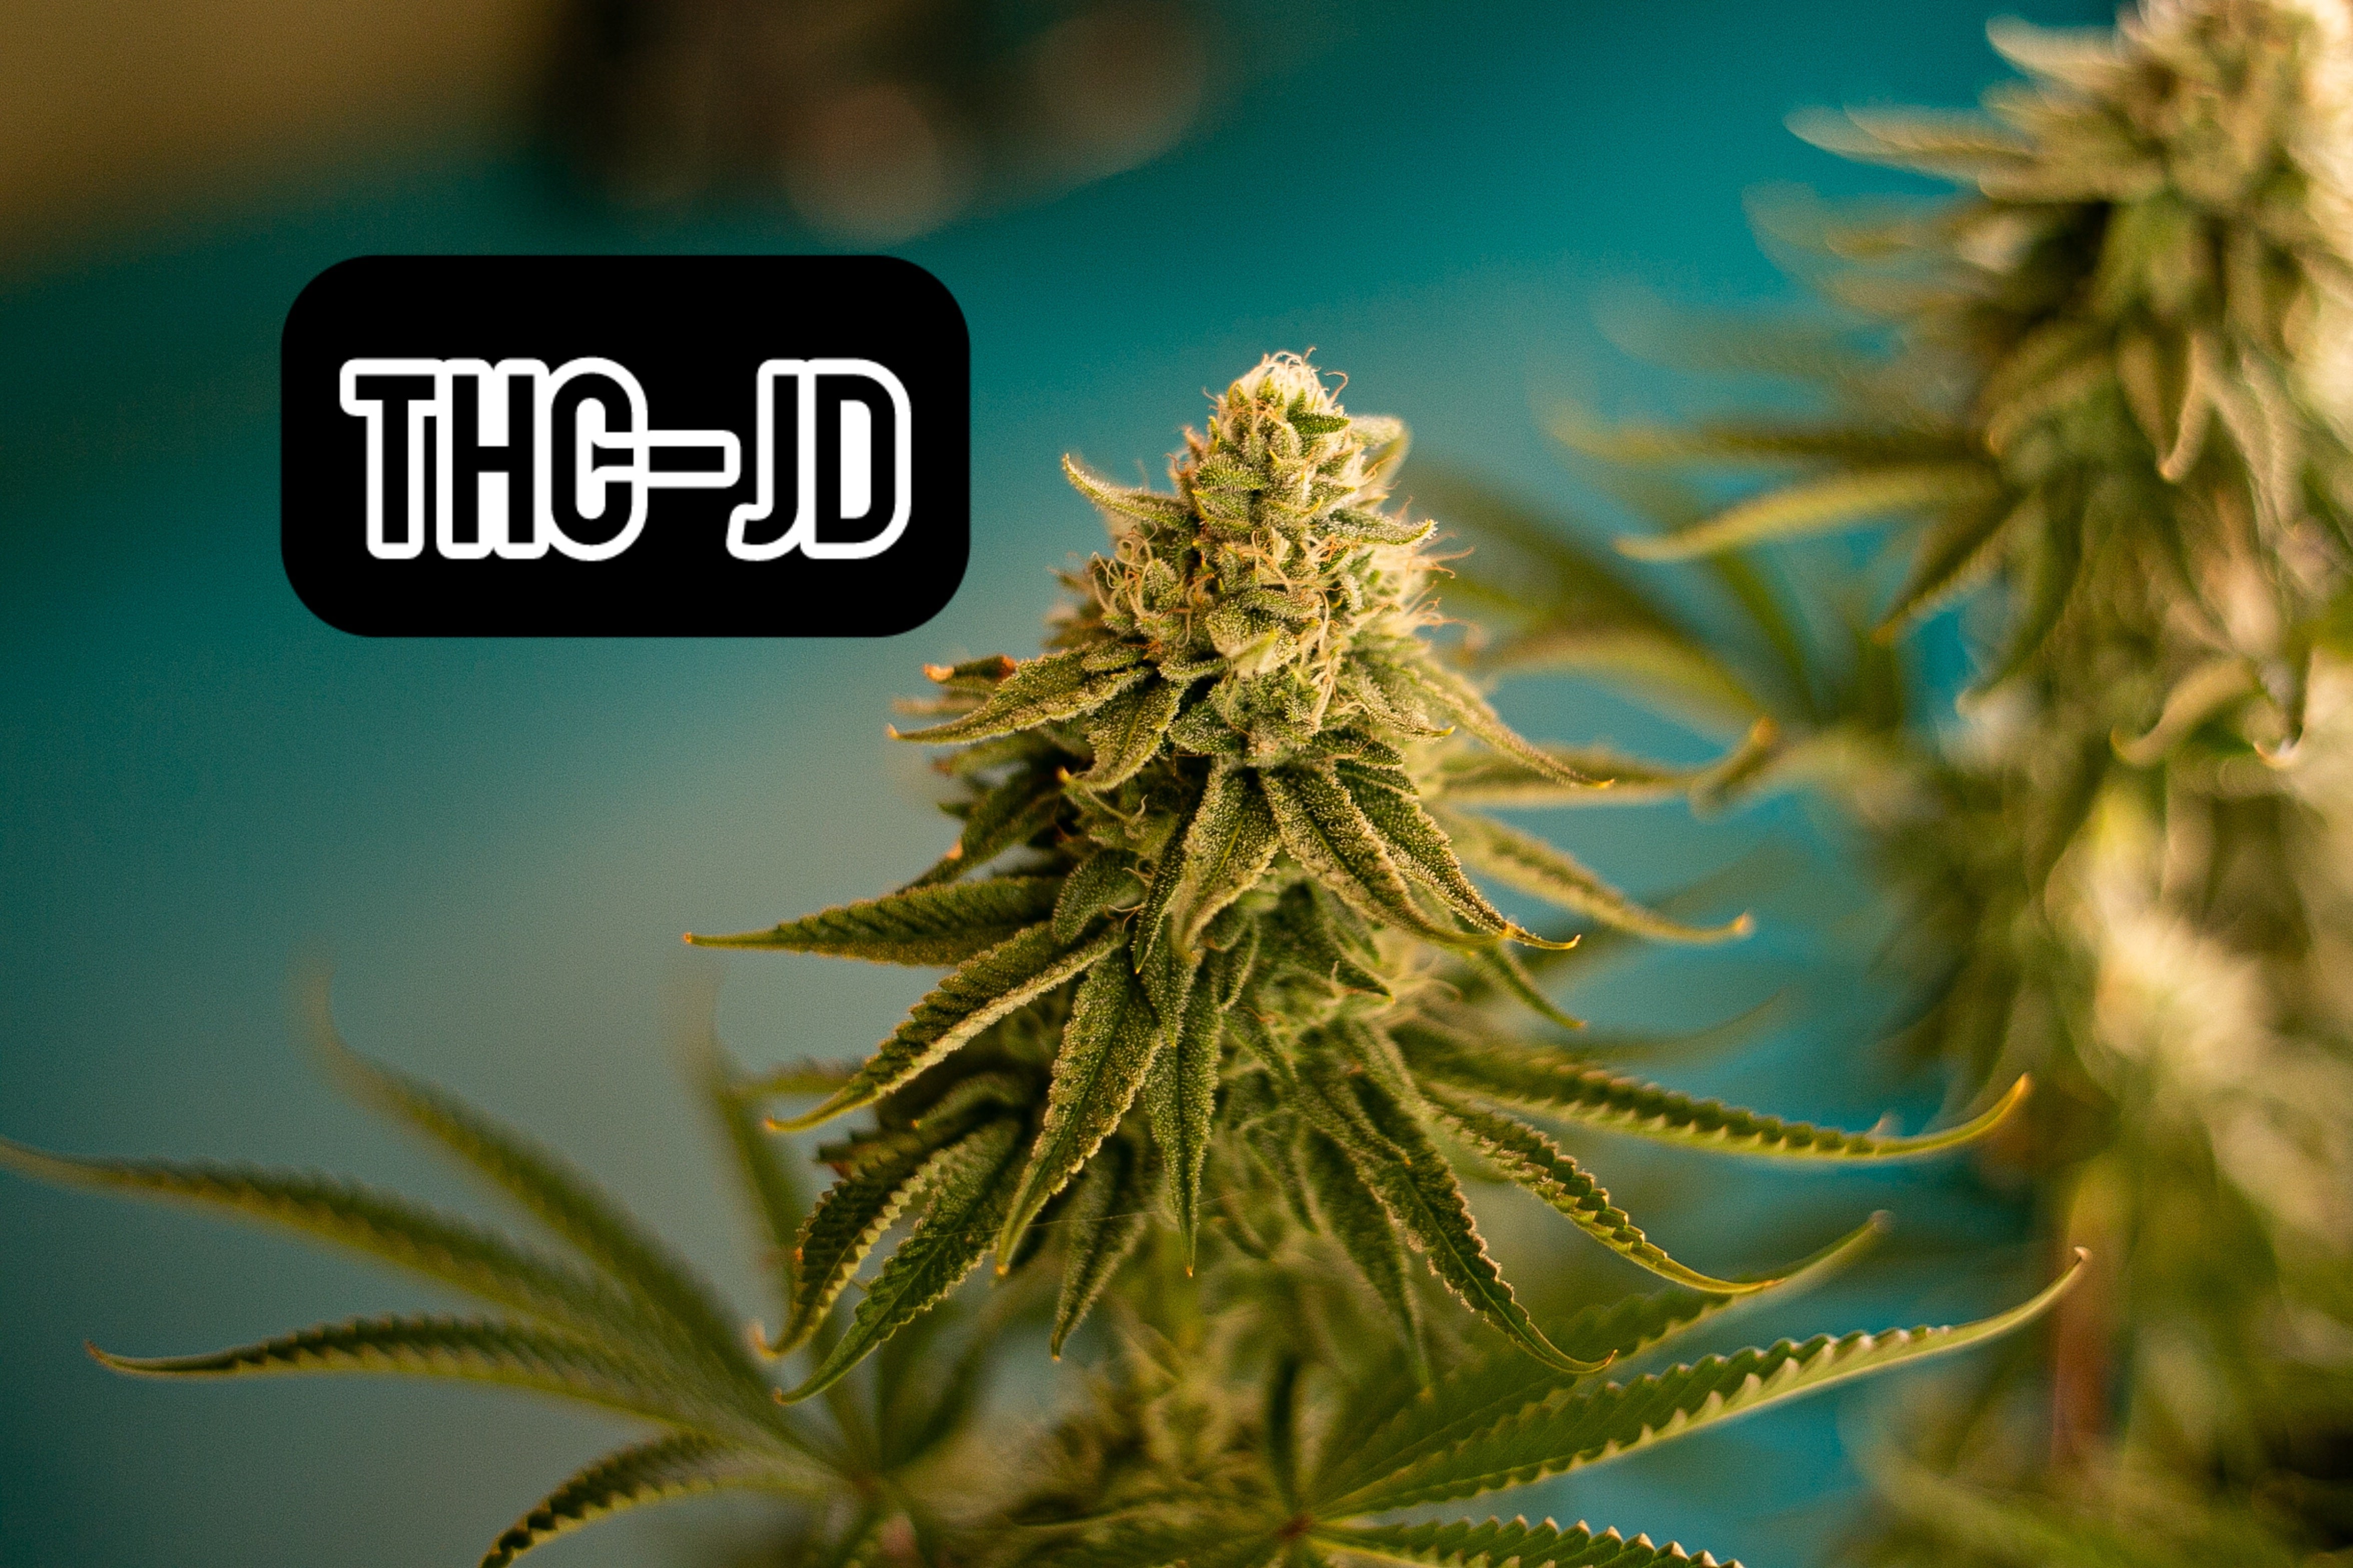 Découverte du THCJD : Un Nouveau Cannabinoïde Révolutionnaire